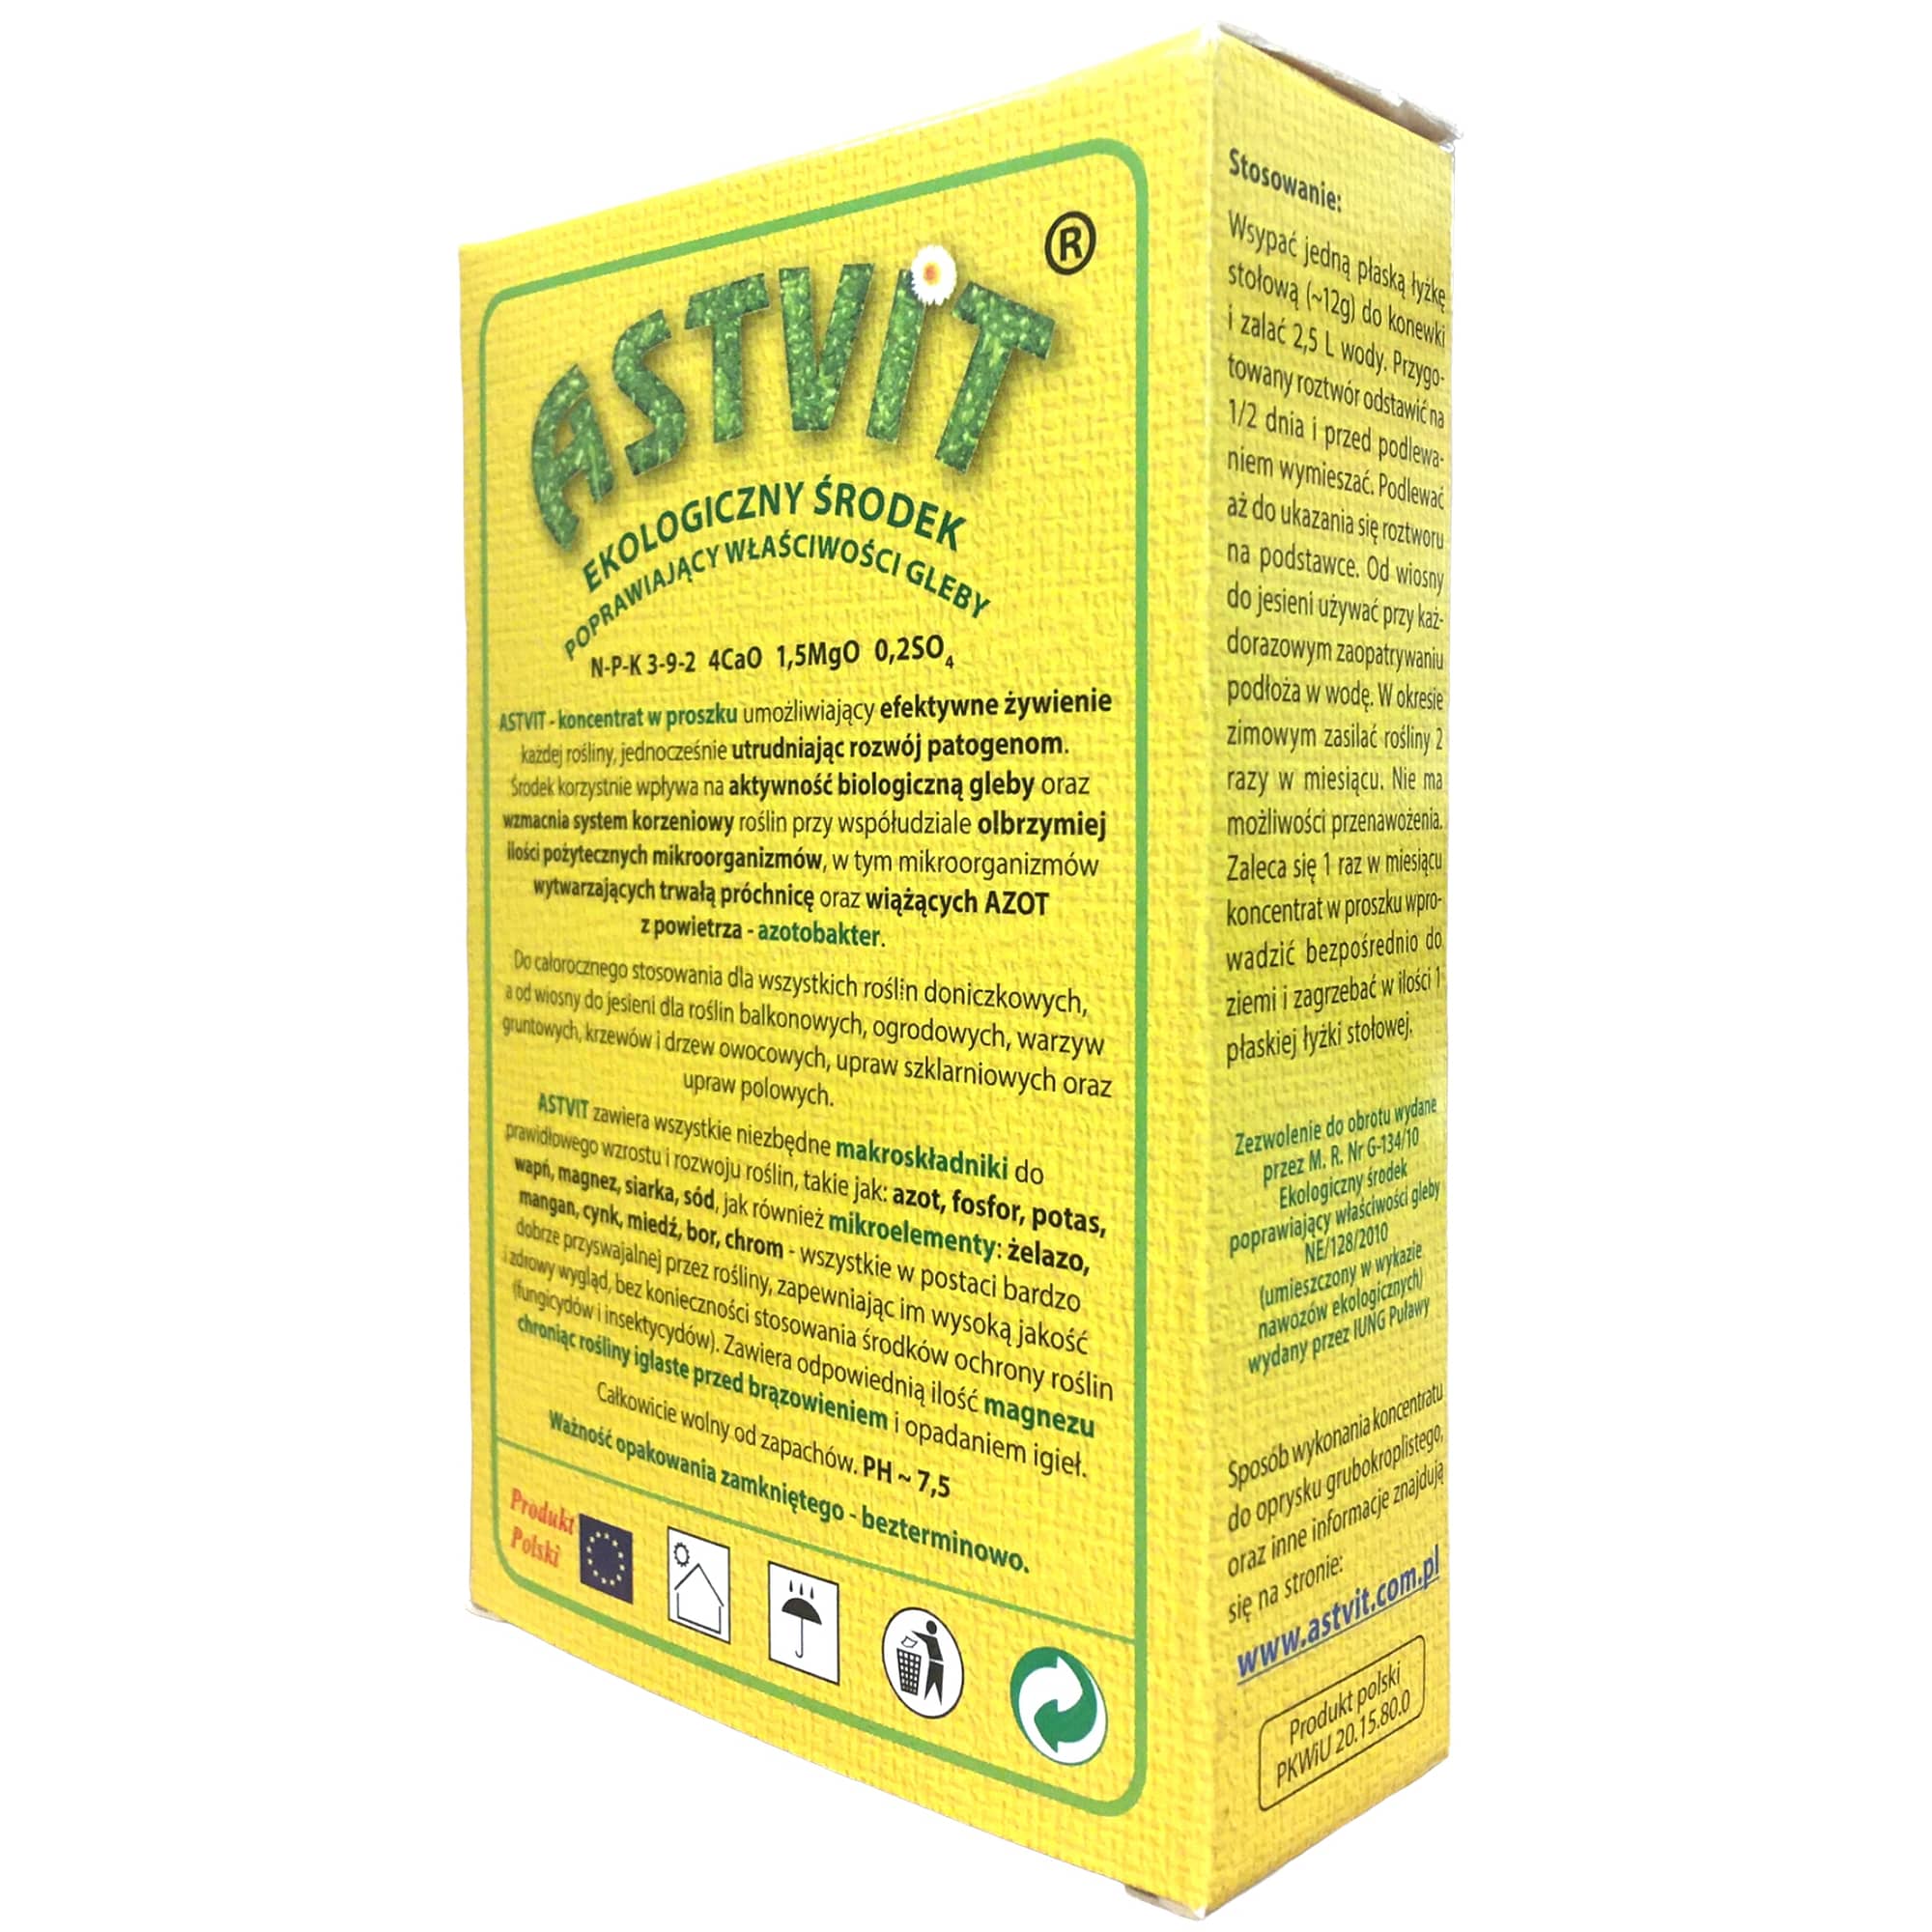 Nawóz naturalny Astvit